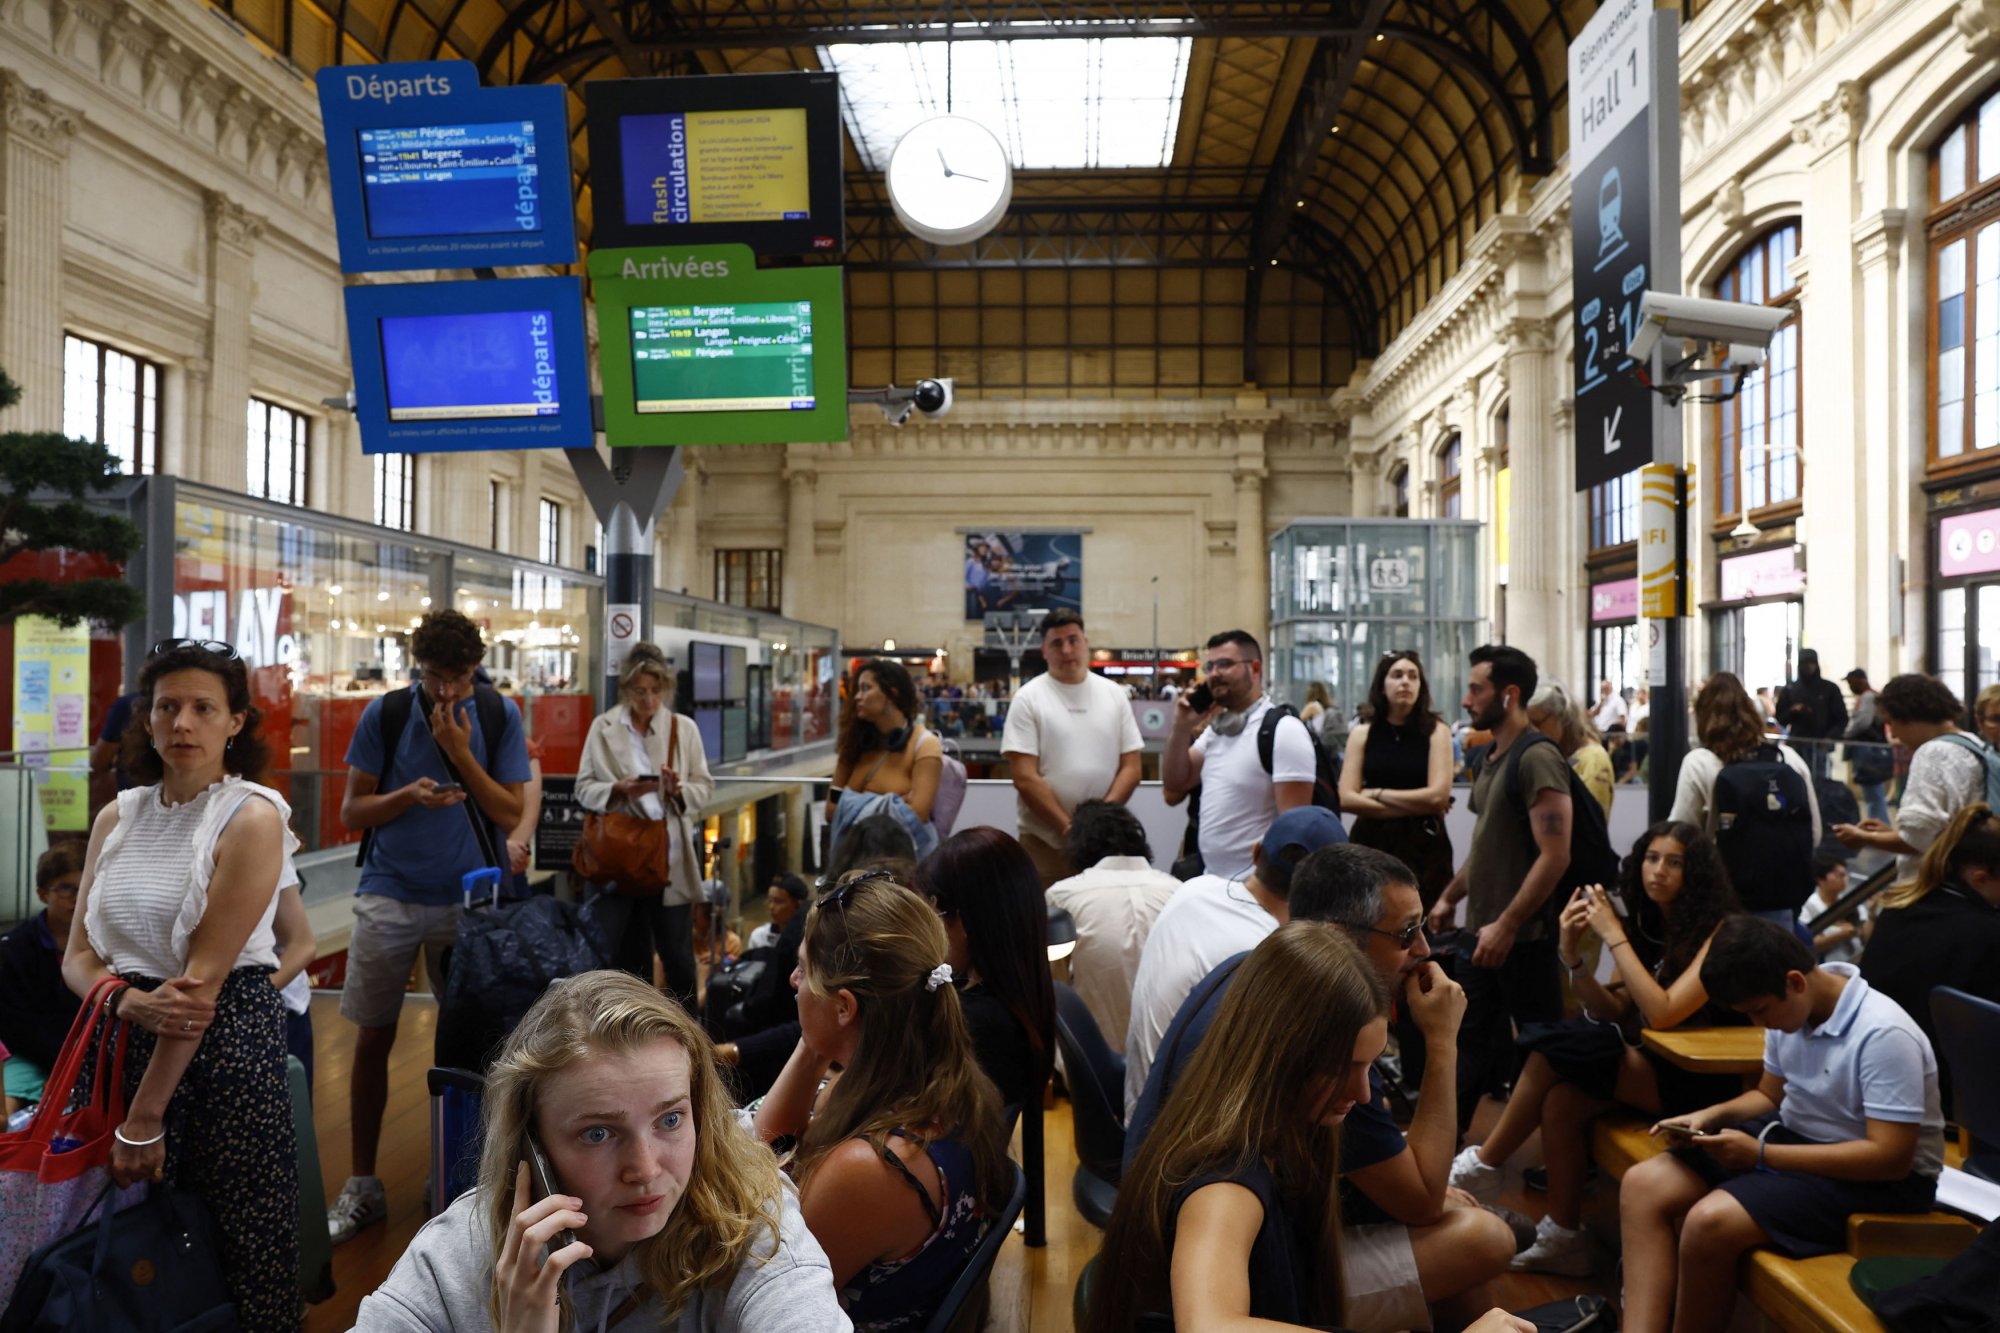 Γαλλία: Η Εurostar συμβουλεύει τους επιβάτες να μην ταξιδεύουν μετά την επίθεση στα τρένα υψηλής ταχύτητας